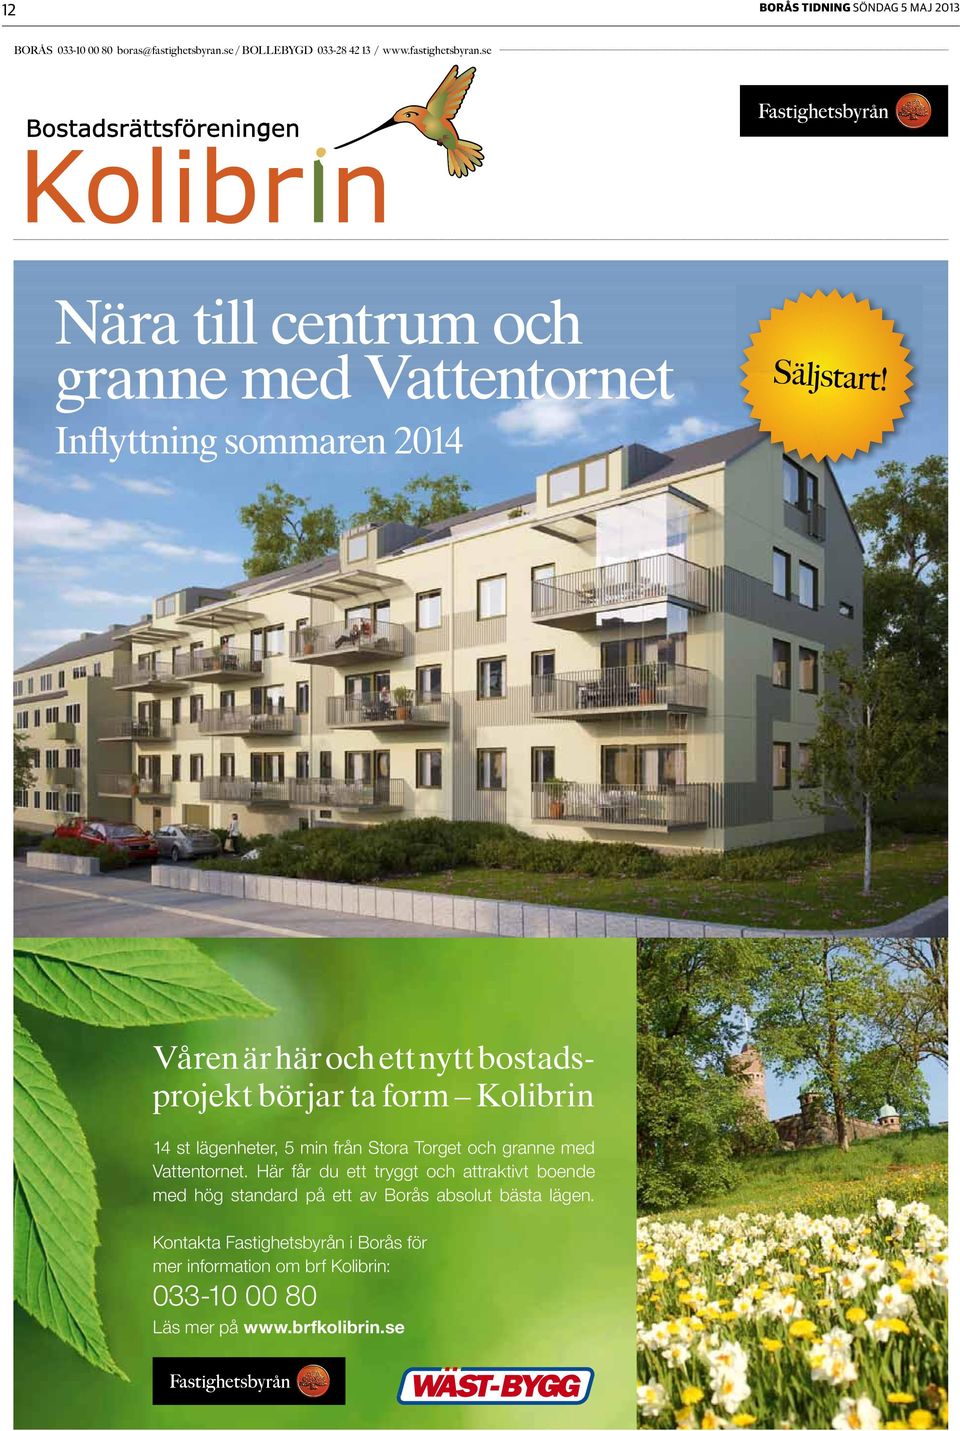 Våren är här och ett nytt bostadsprojekt börjar ta form Kolibrin 14 st lägenheter, 5 min från Stora Torget och granne med Vattentornet.